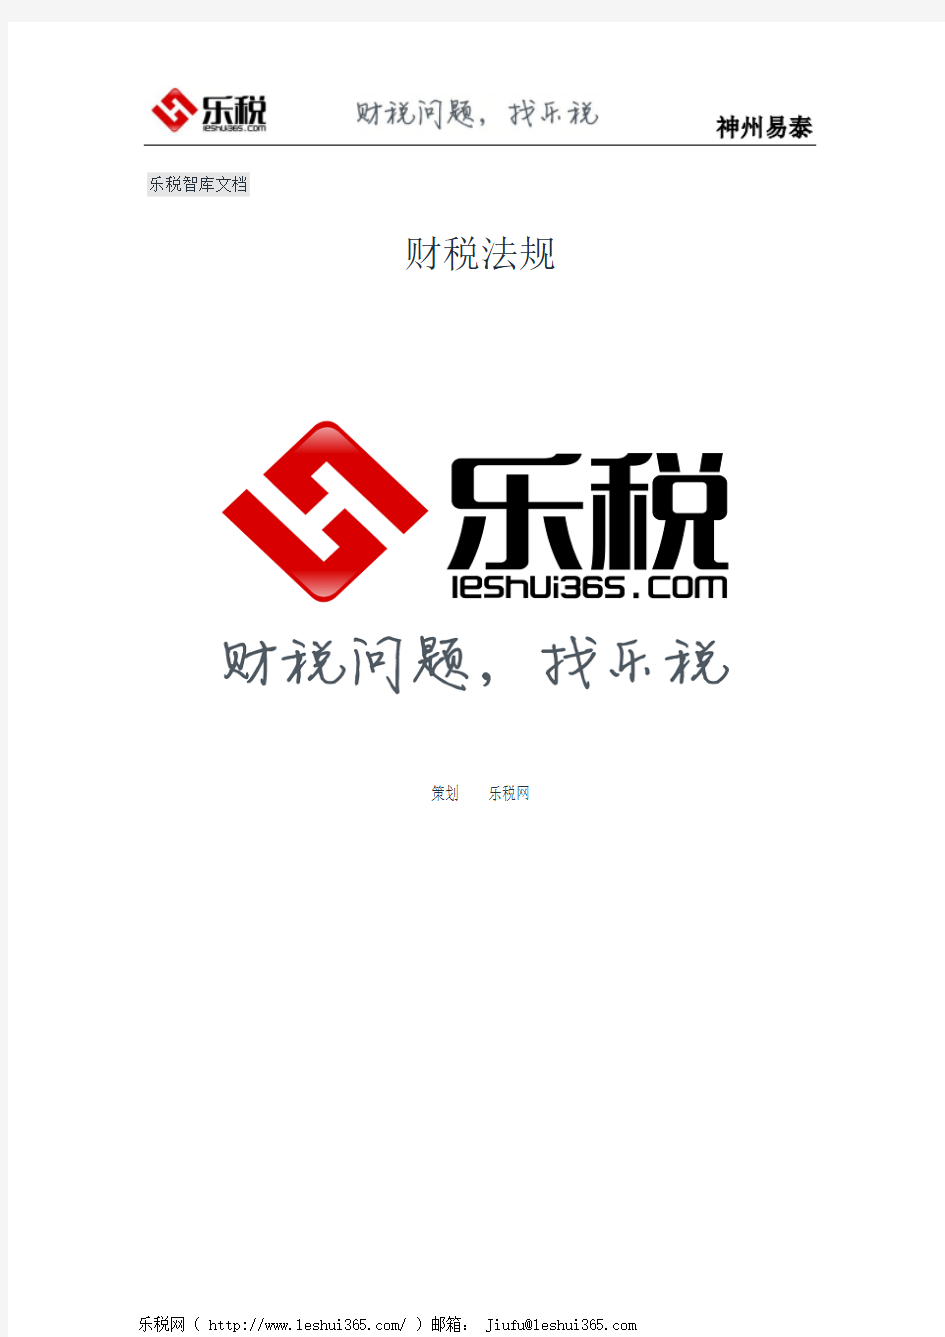 上海市国家税务局关于印发《来料加工贸易免税管理办法﹝试行﹞》的通知